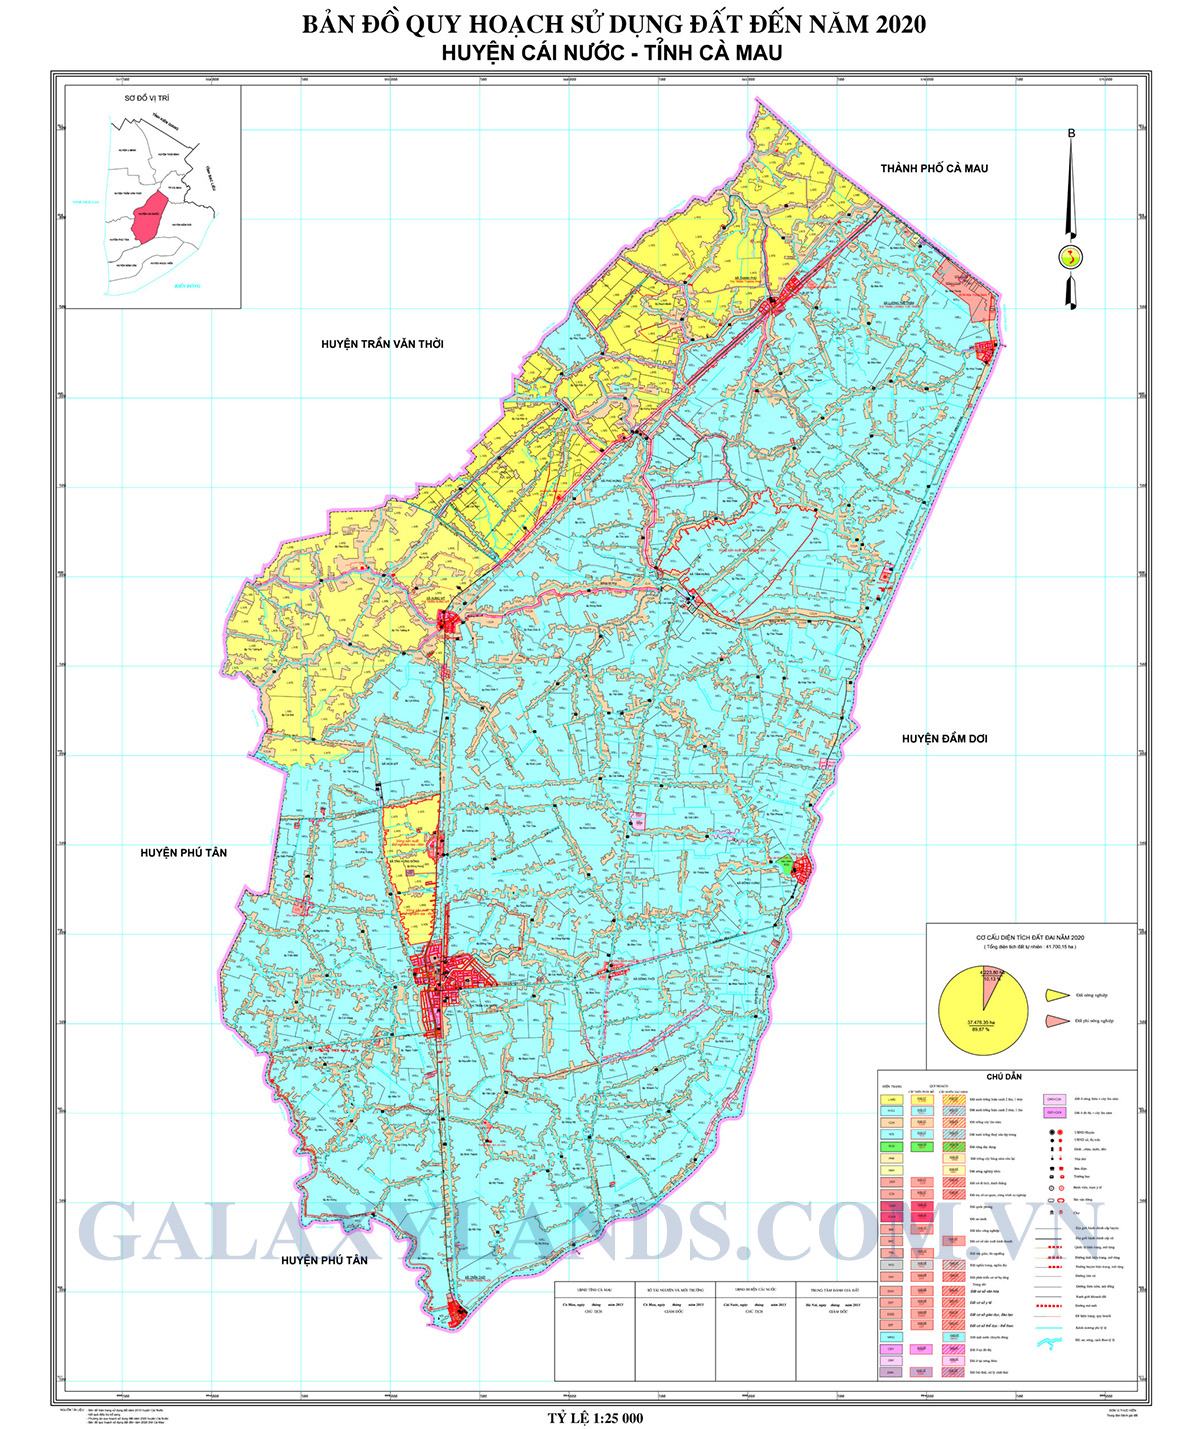 Bản đồ quy hoạch sử dụng đất huyện Cái Nước tỉnh Cà Mau 